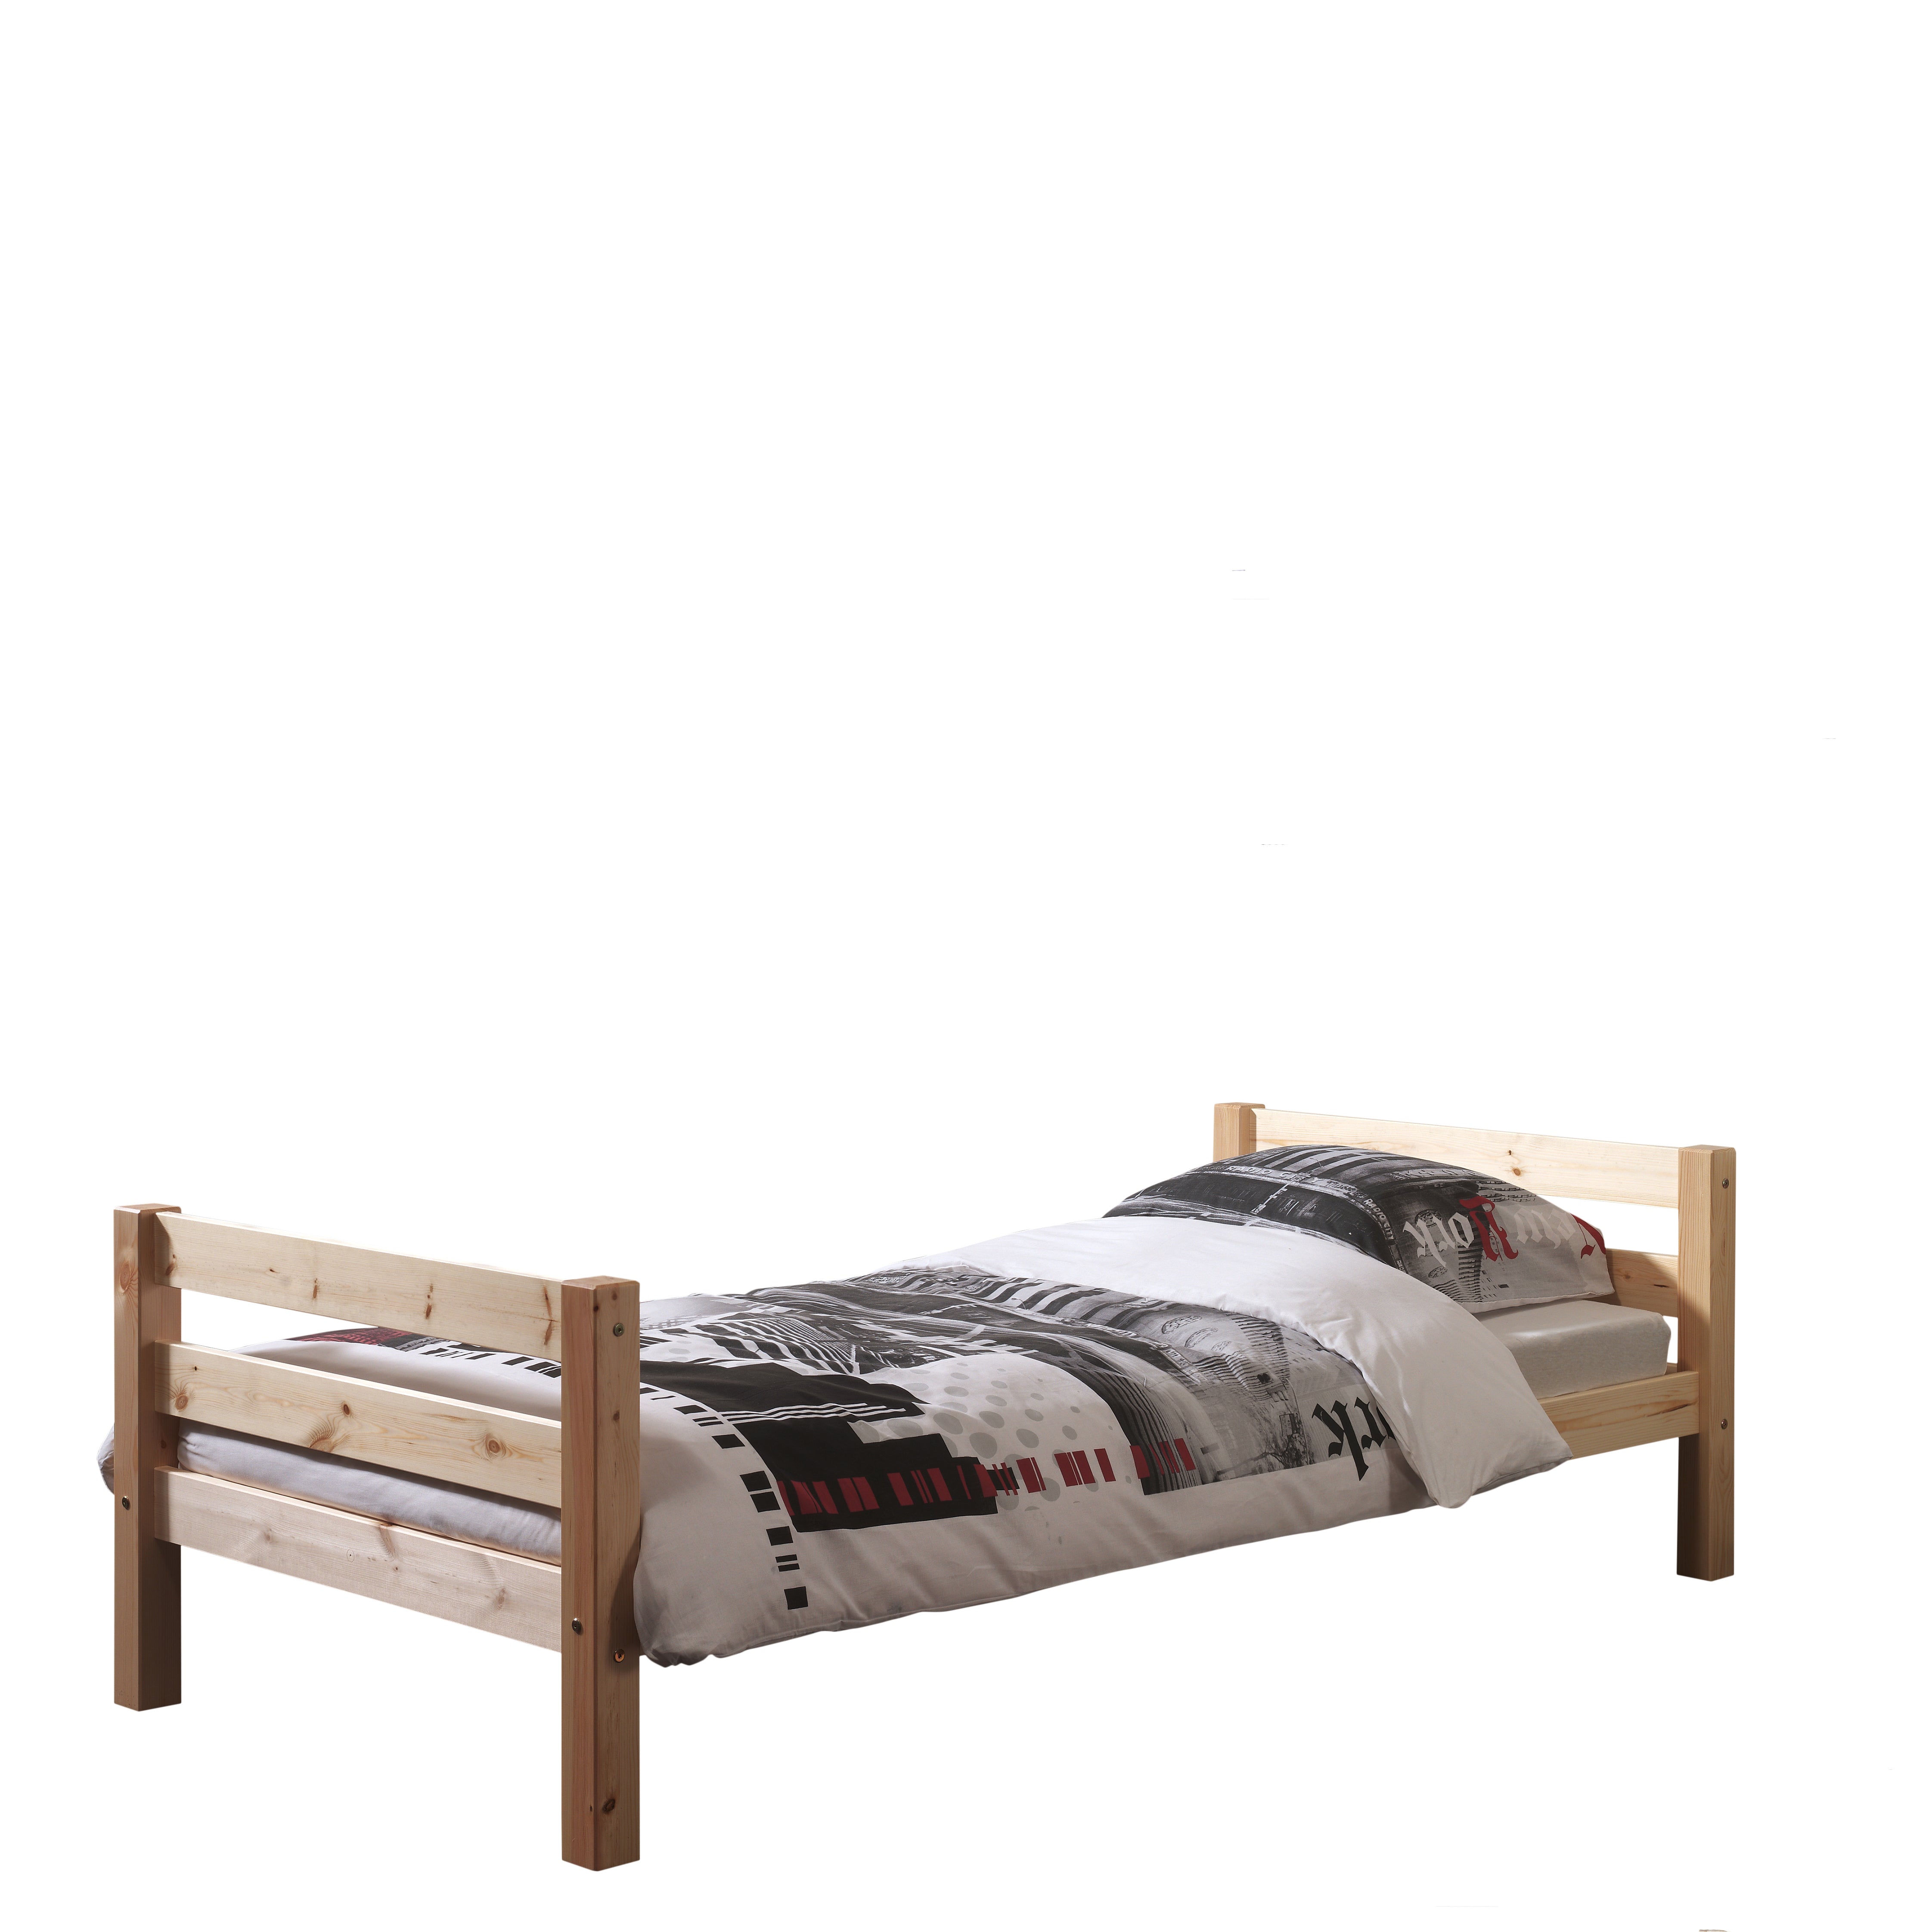 Vipack Pino Kids Single Bed - Natural Wood